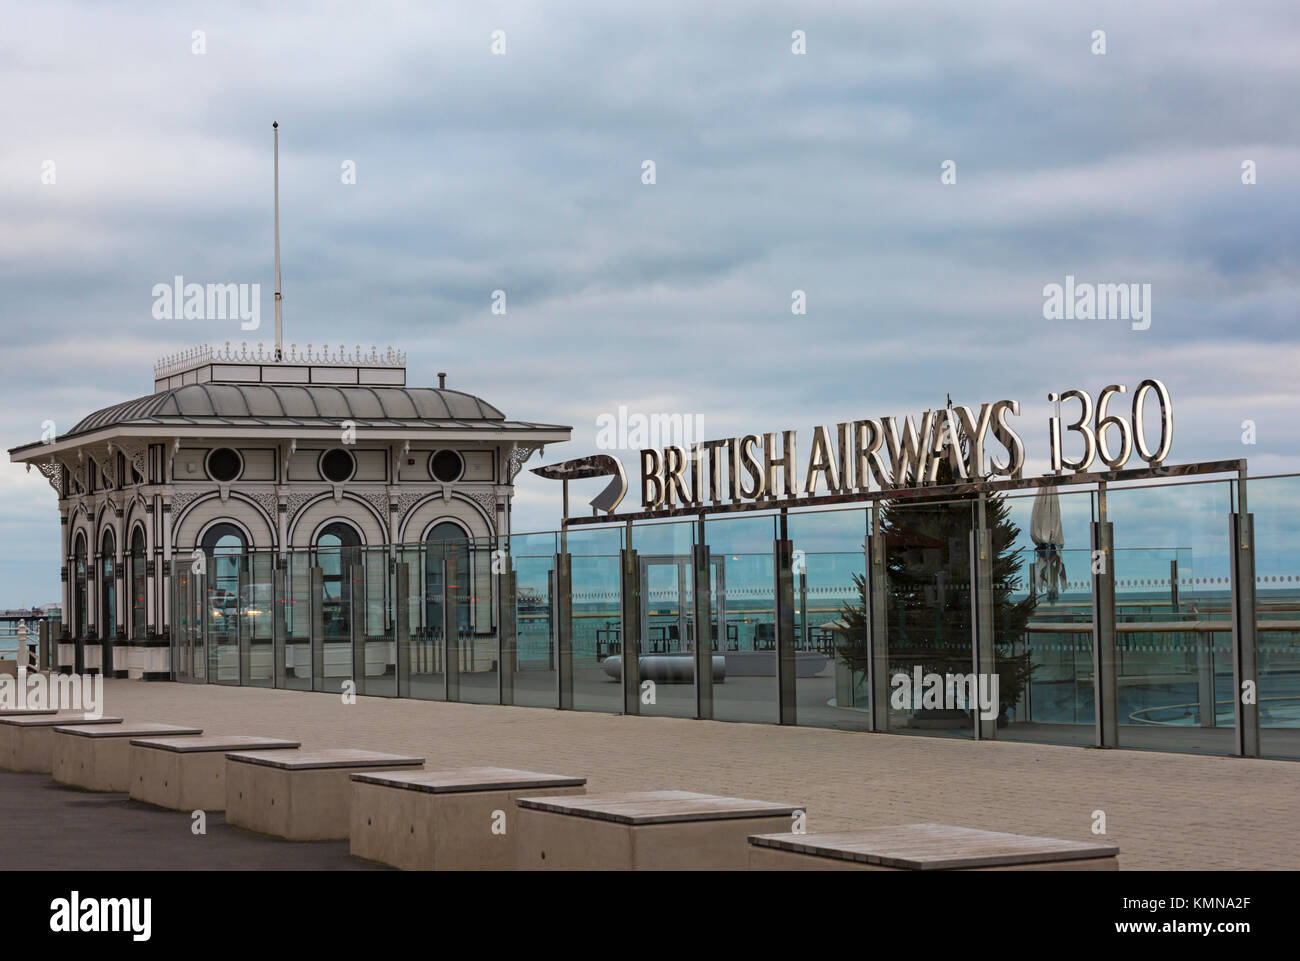 British Airways signe i360 et jetée Ouest Salon de Thé, reconstruit 1866 Jetée ouest péage, à Brighton, East Sussex, Angleterre Royaume-uni en Décembre Banque D'Images